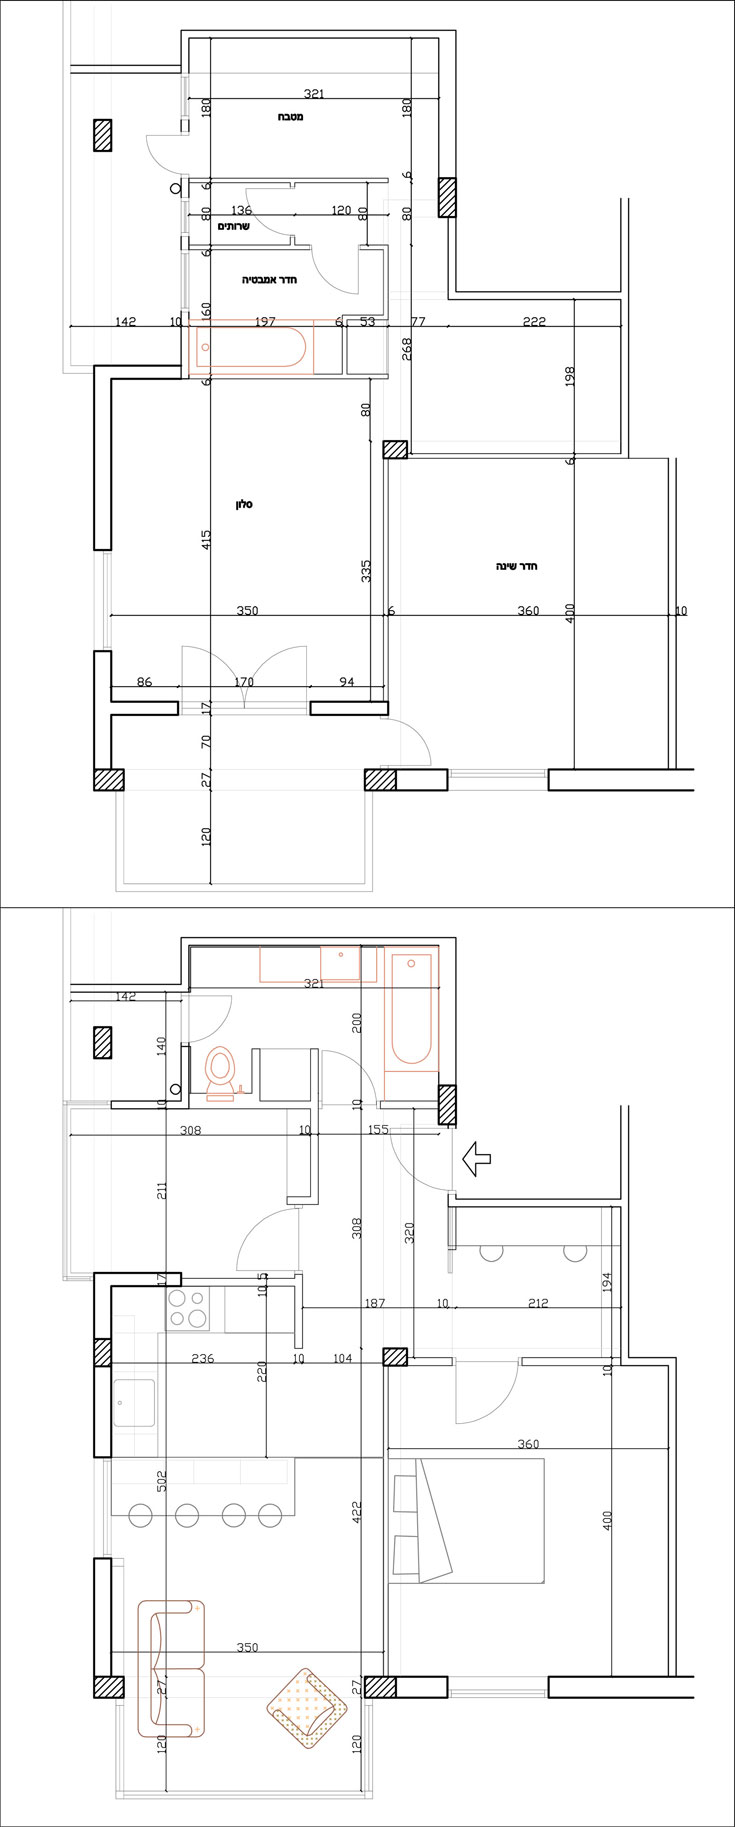 למעלה: תוכנית הדירה המקורית. למטה: החלוקה החדשה. המבואה הפכה לחדר עבודה קטן, המטבח לחדר הרחצה, חדרי השירותים והאמבטיה לחדר שלישי (צילום: יהונתן צור)